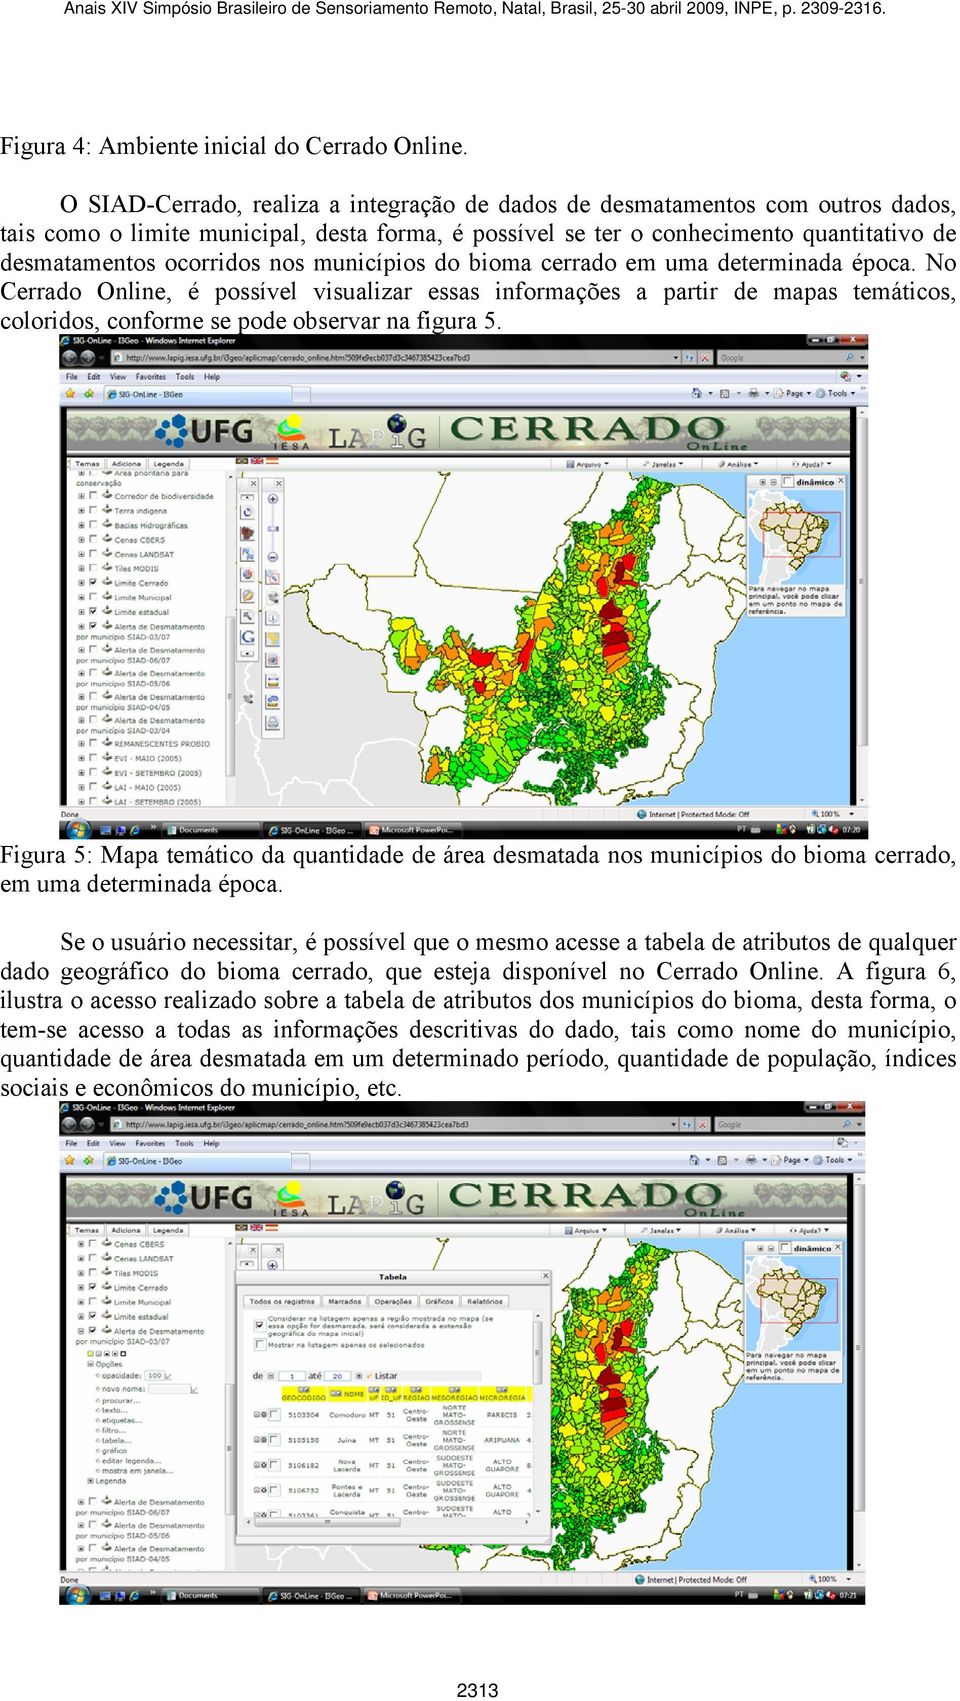 nos municípios do bioma cerrado em uma determinada época. No Cerrado Online, é possível visualizar essas informações a partir de mapas temáticos, coloridos, conforme se pode observar na figura 5.